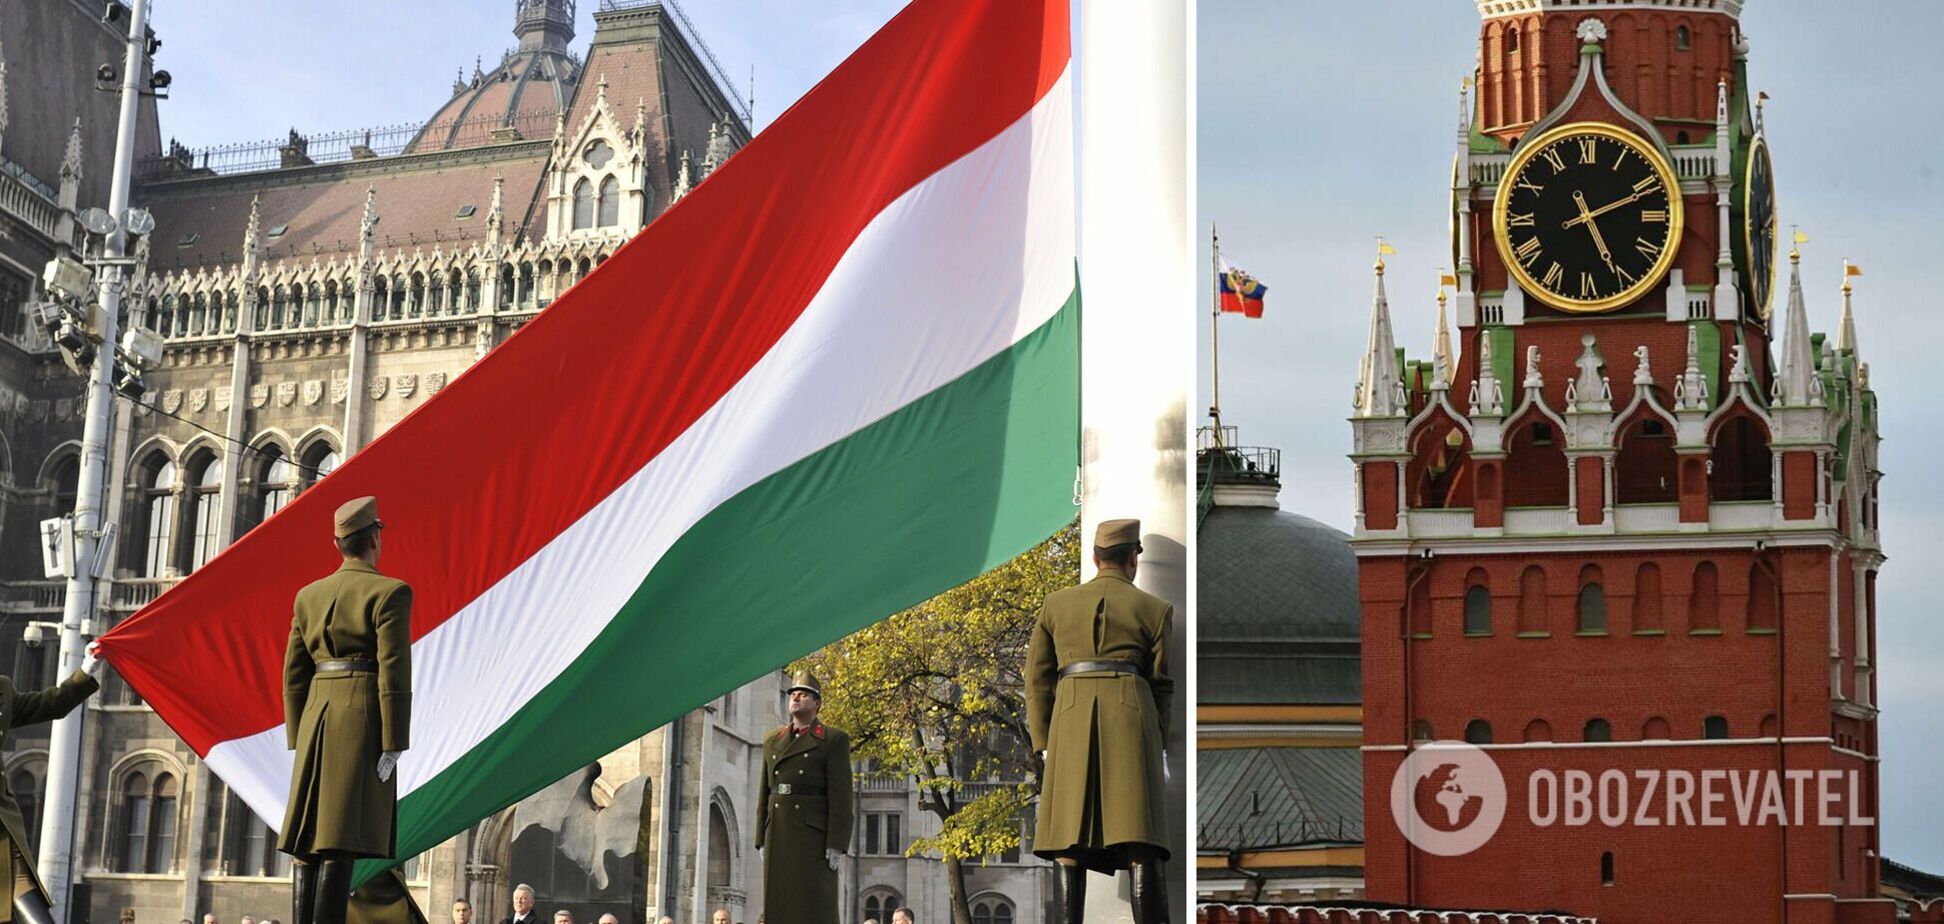 Венгрия, скорее всего, знала о подготовке Россией войны